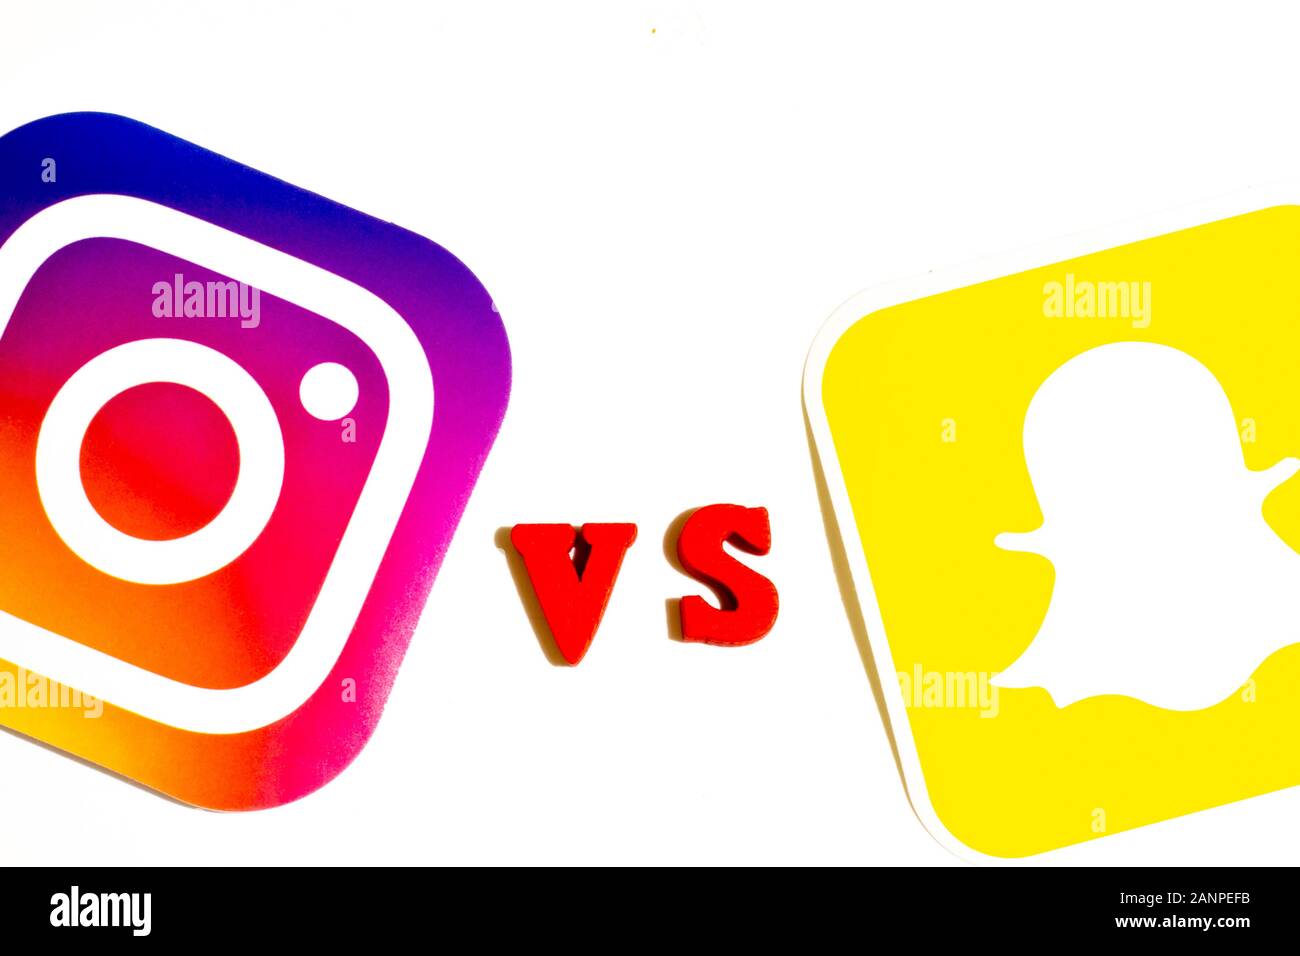 Los Angeles, Californie, États-Unis - 17 janvier 2020: Instagram vs Snapchat comparaison concept, éditorial illustratif Banque D'Images